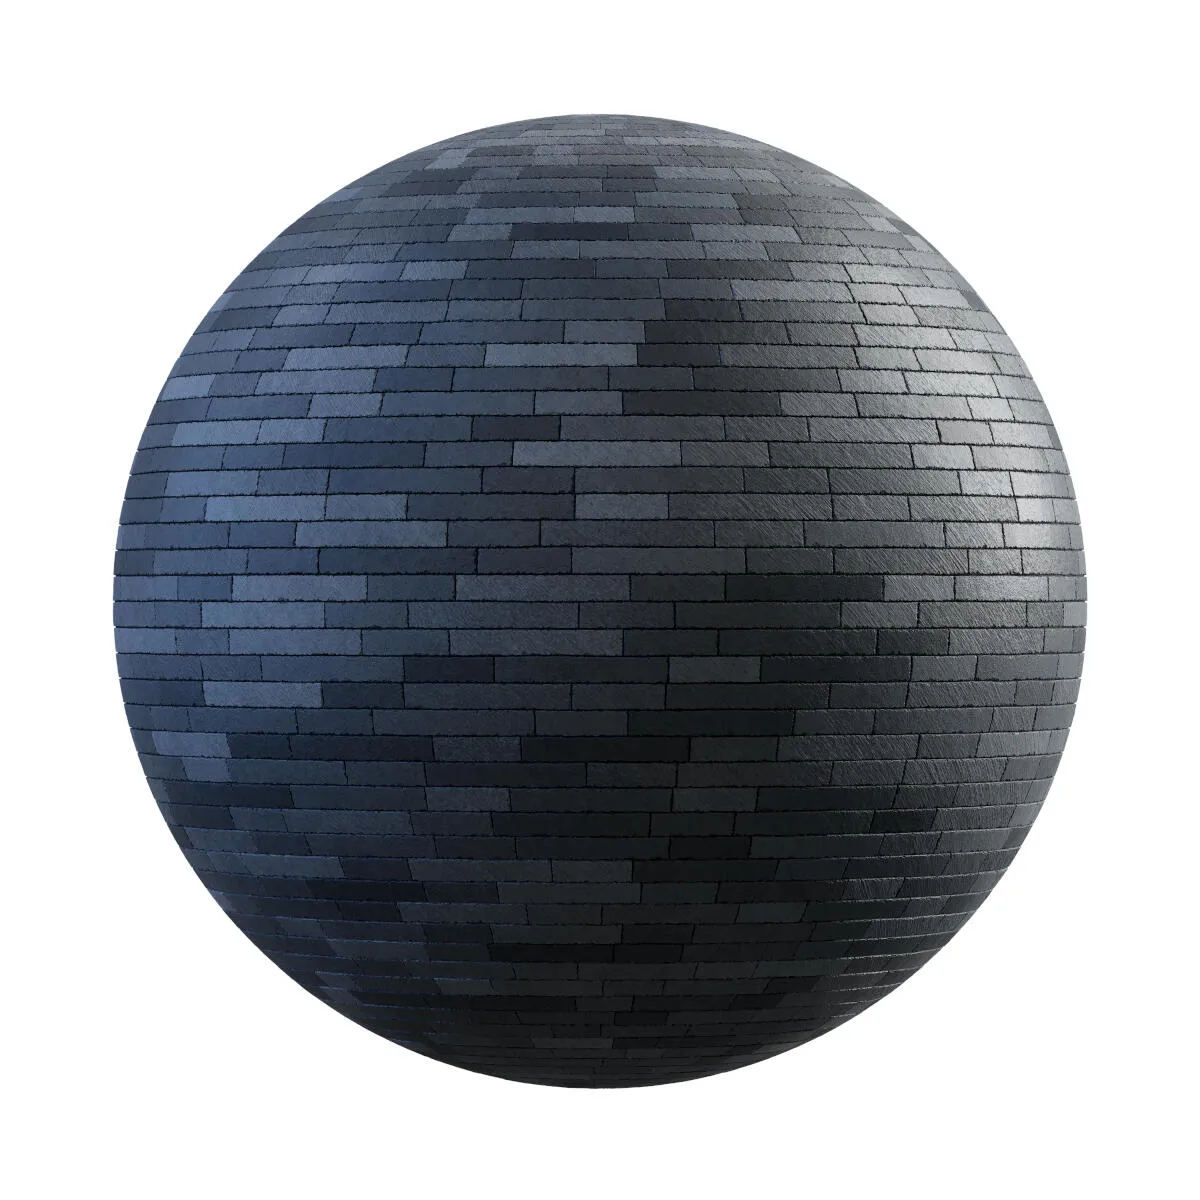 PBR Textures Volume 34 – Pavements – 4K – dark_grey_rectangular_stone_pavement_36_08